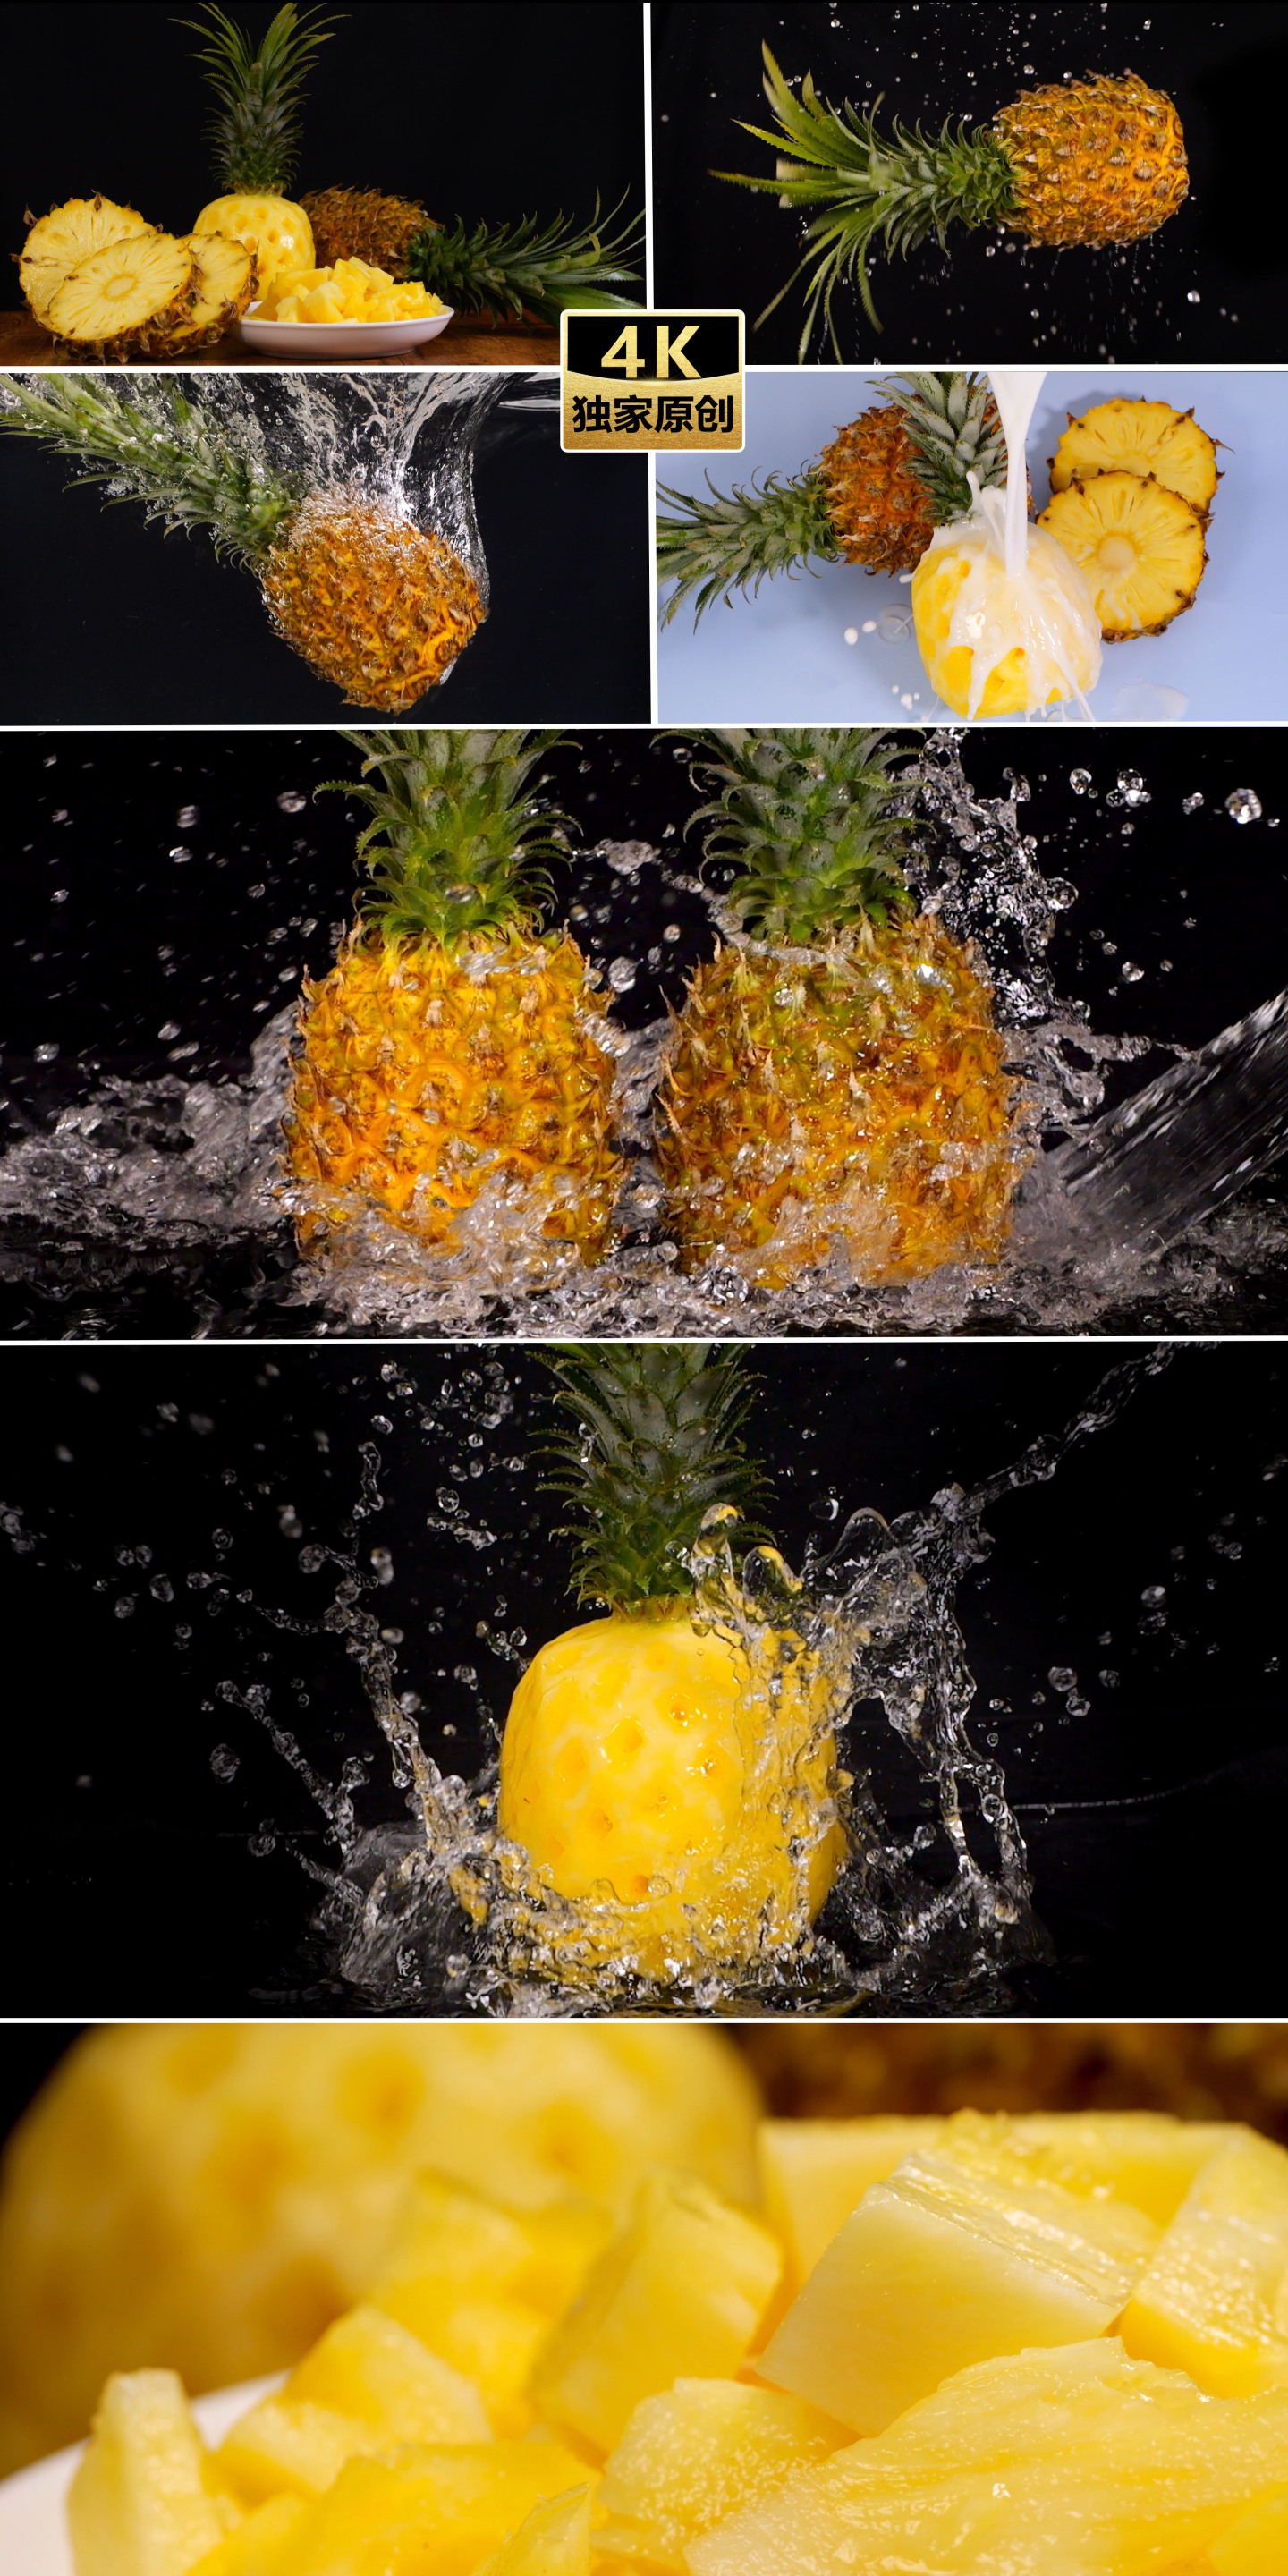 菠萝 菠萝牛奶 菠萝入水